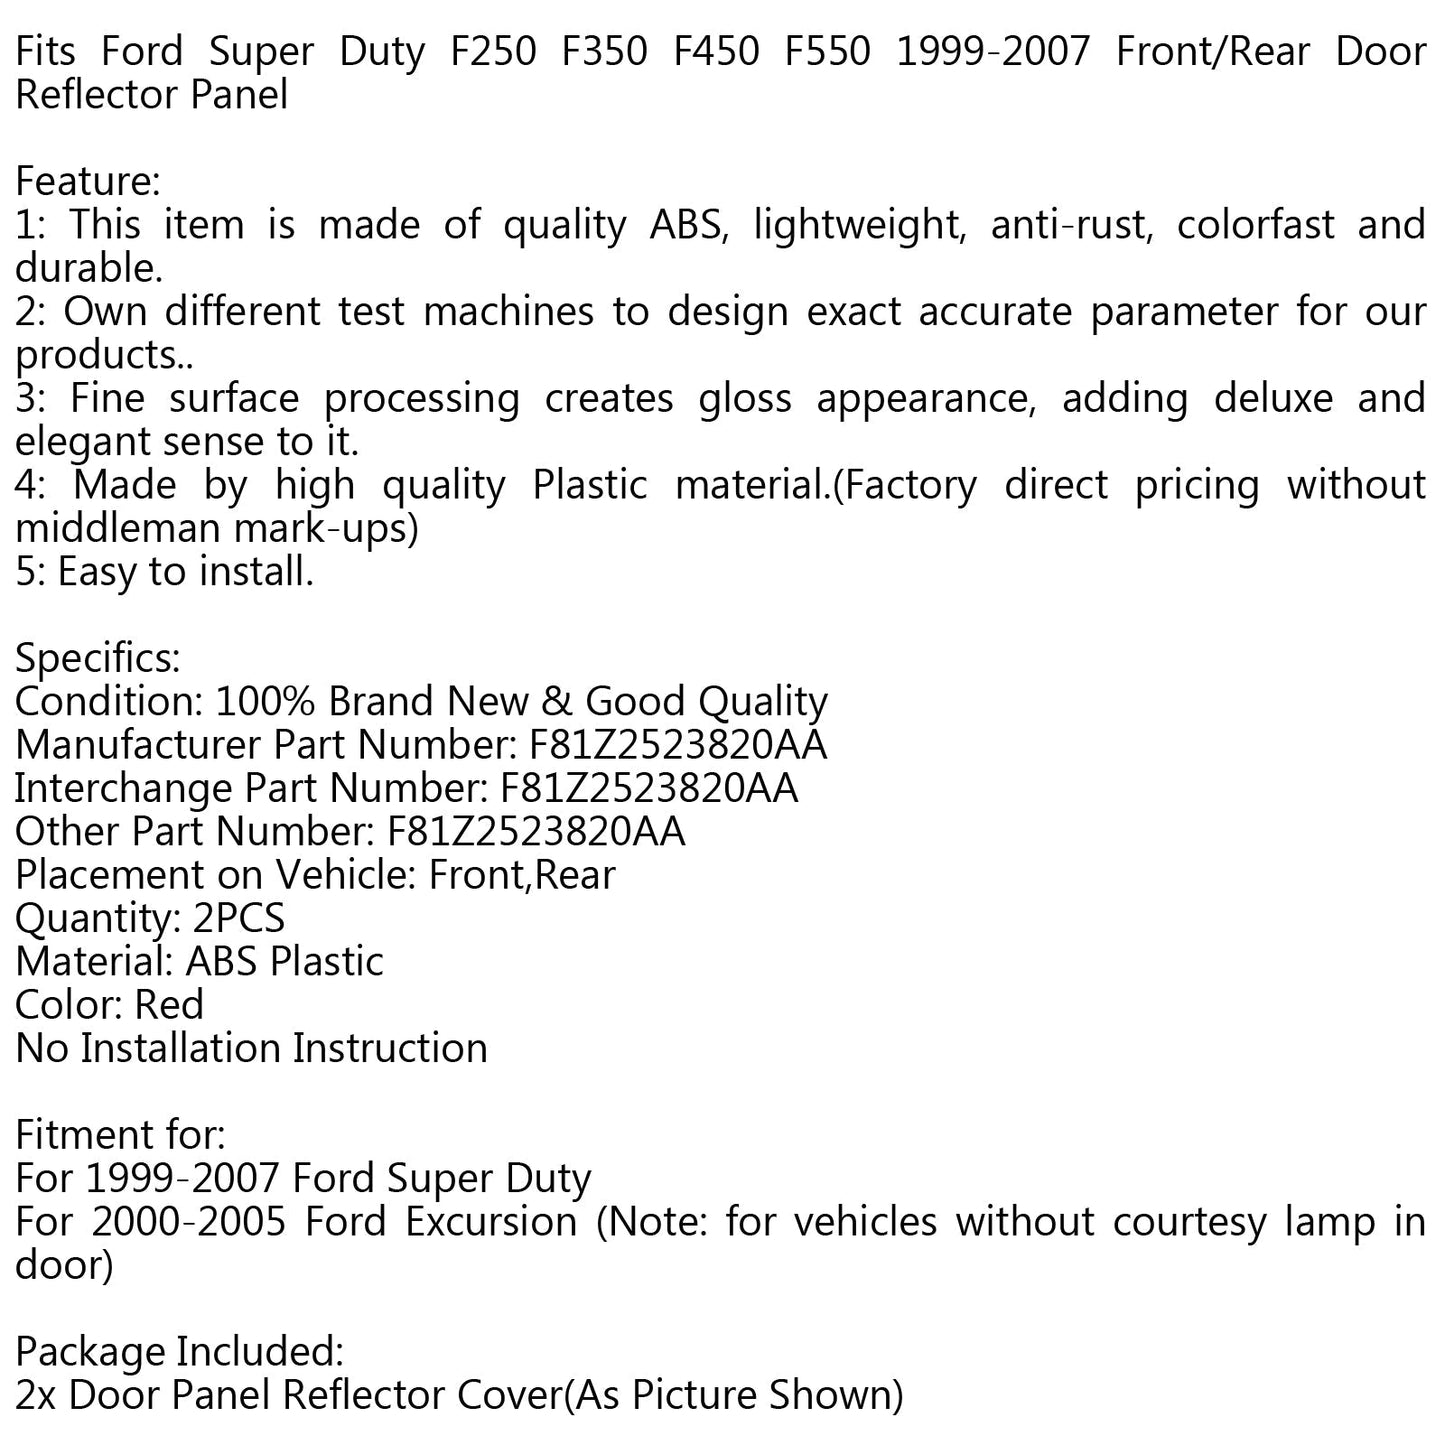 Pannello riflettore porta anteriore/posteriore per Ford Super Duty F250 F350 F450 F550 99-07 generico